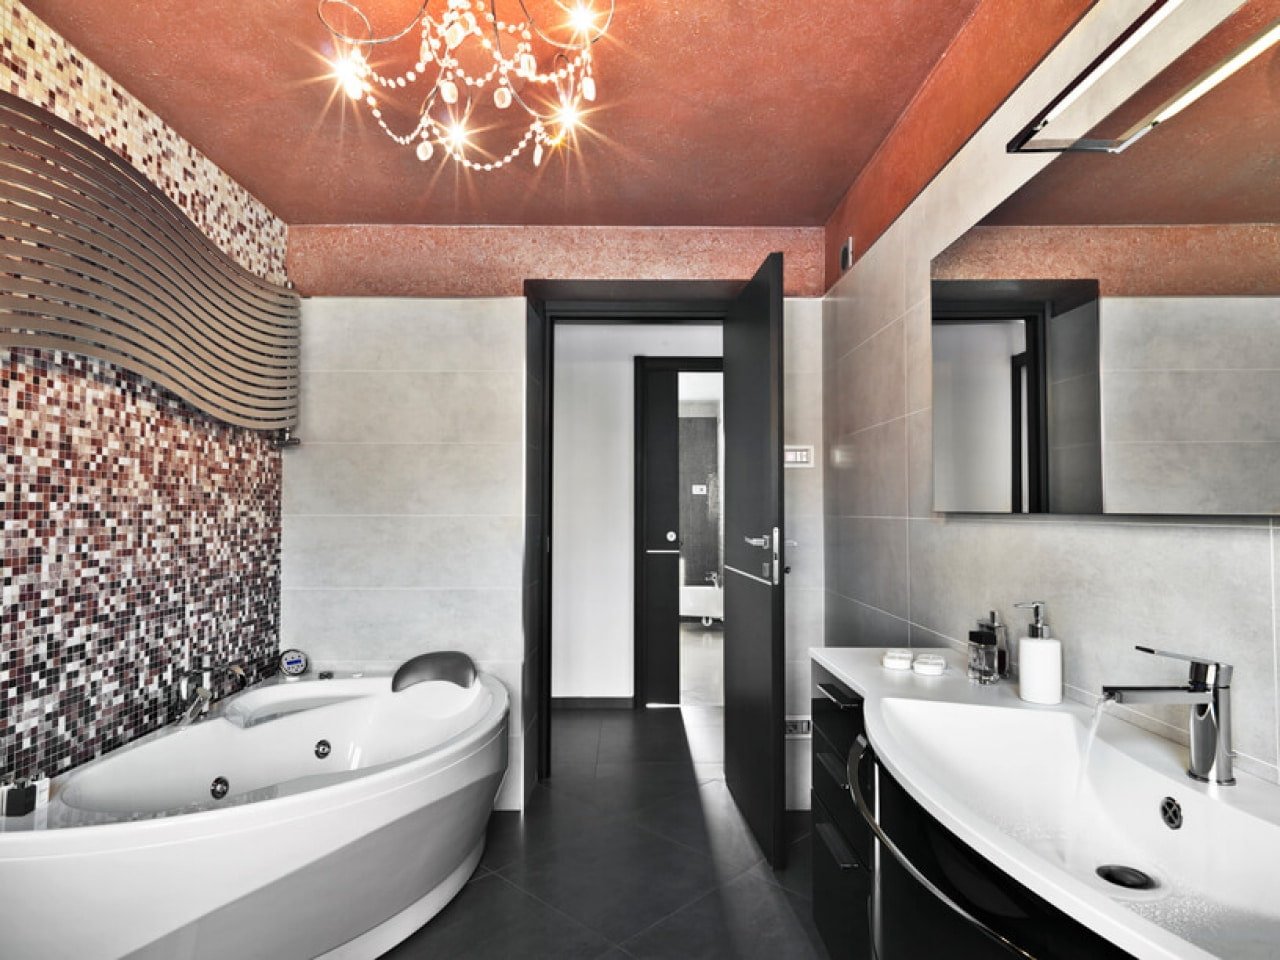 Потолок в ванной - 125 фото вариантов дизайна и стильного украшения потолка